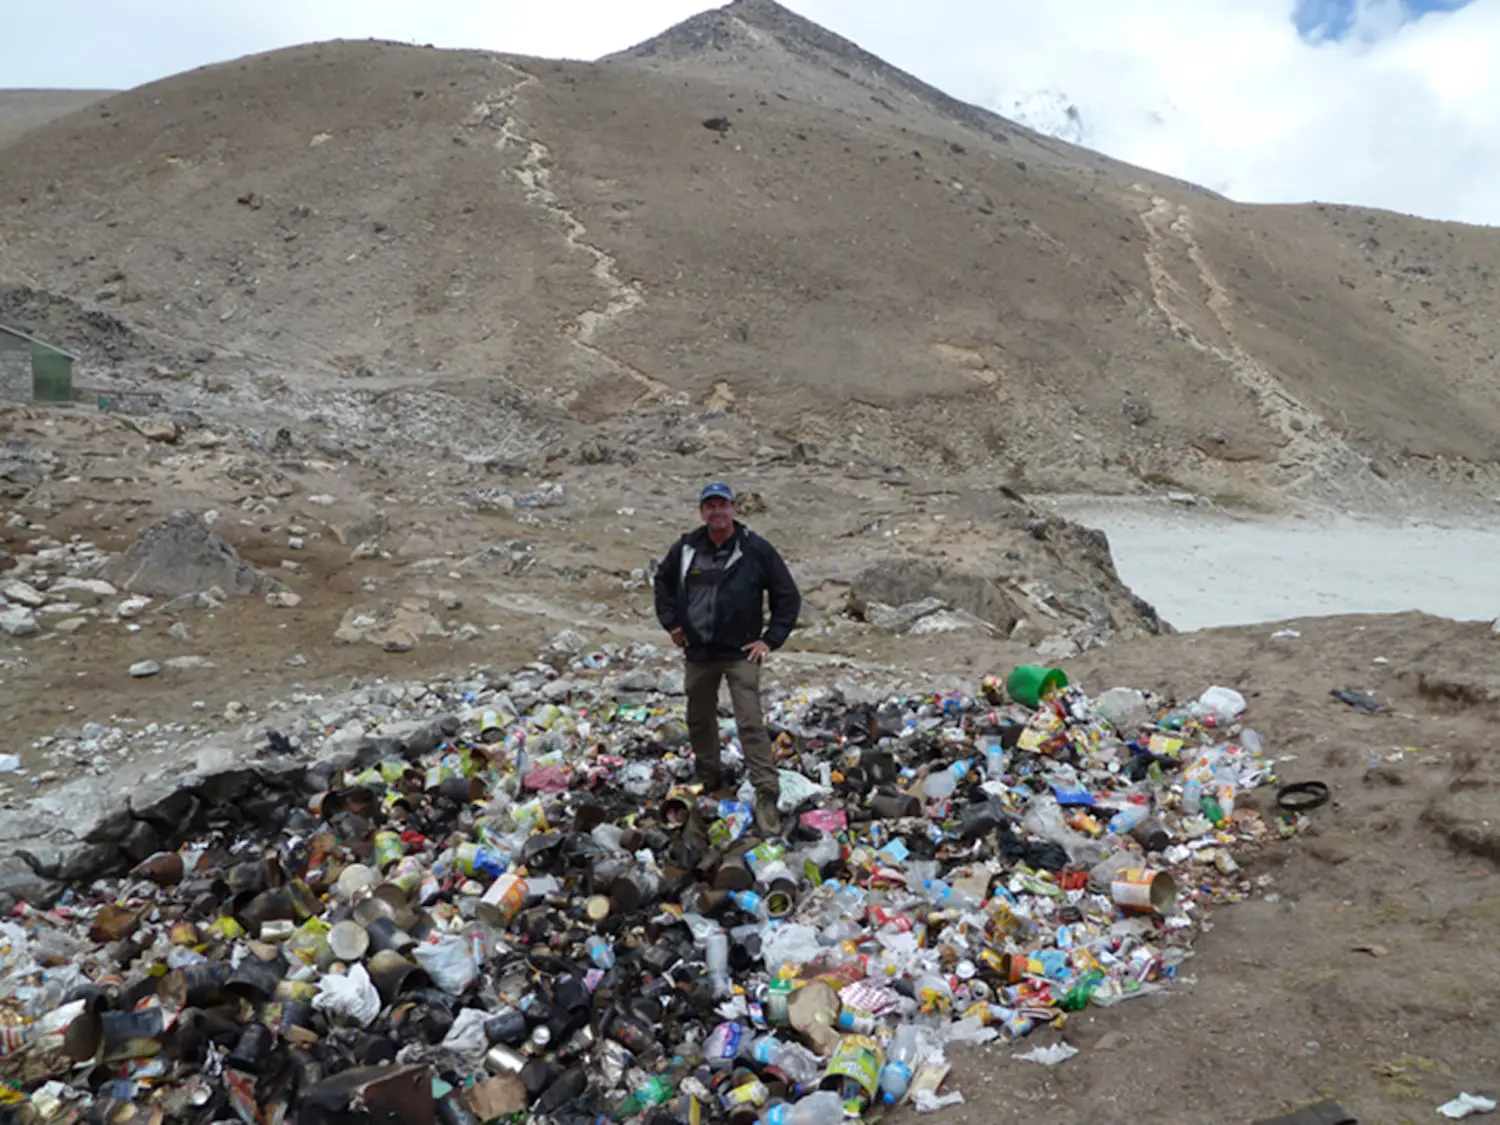 Le géologue de montagne Alton Byers étudie la région himalayenne depuis des décennies. Ici, il se tient sur une décharge à Gorak Shep, un petit village au pied de l'Everest.